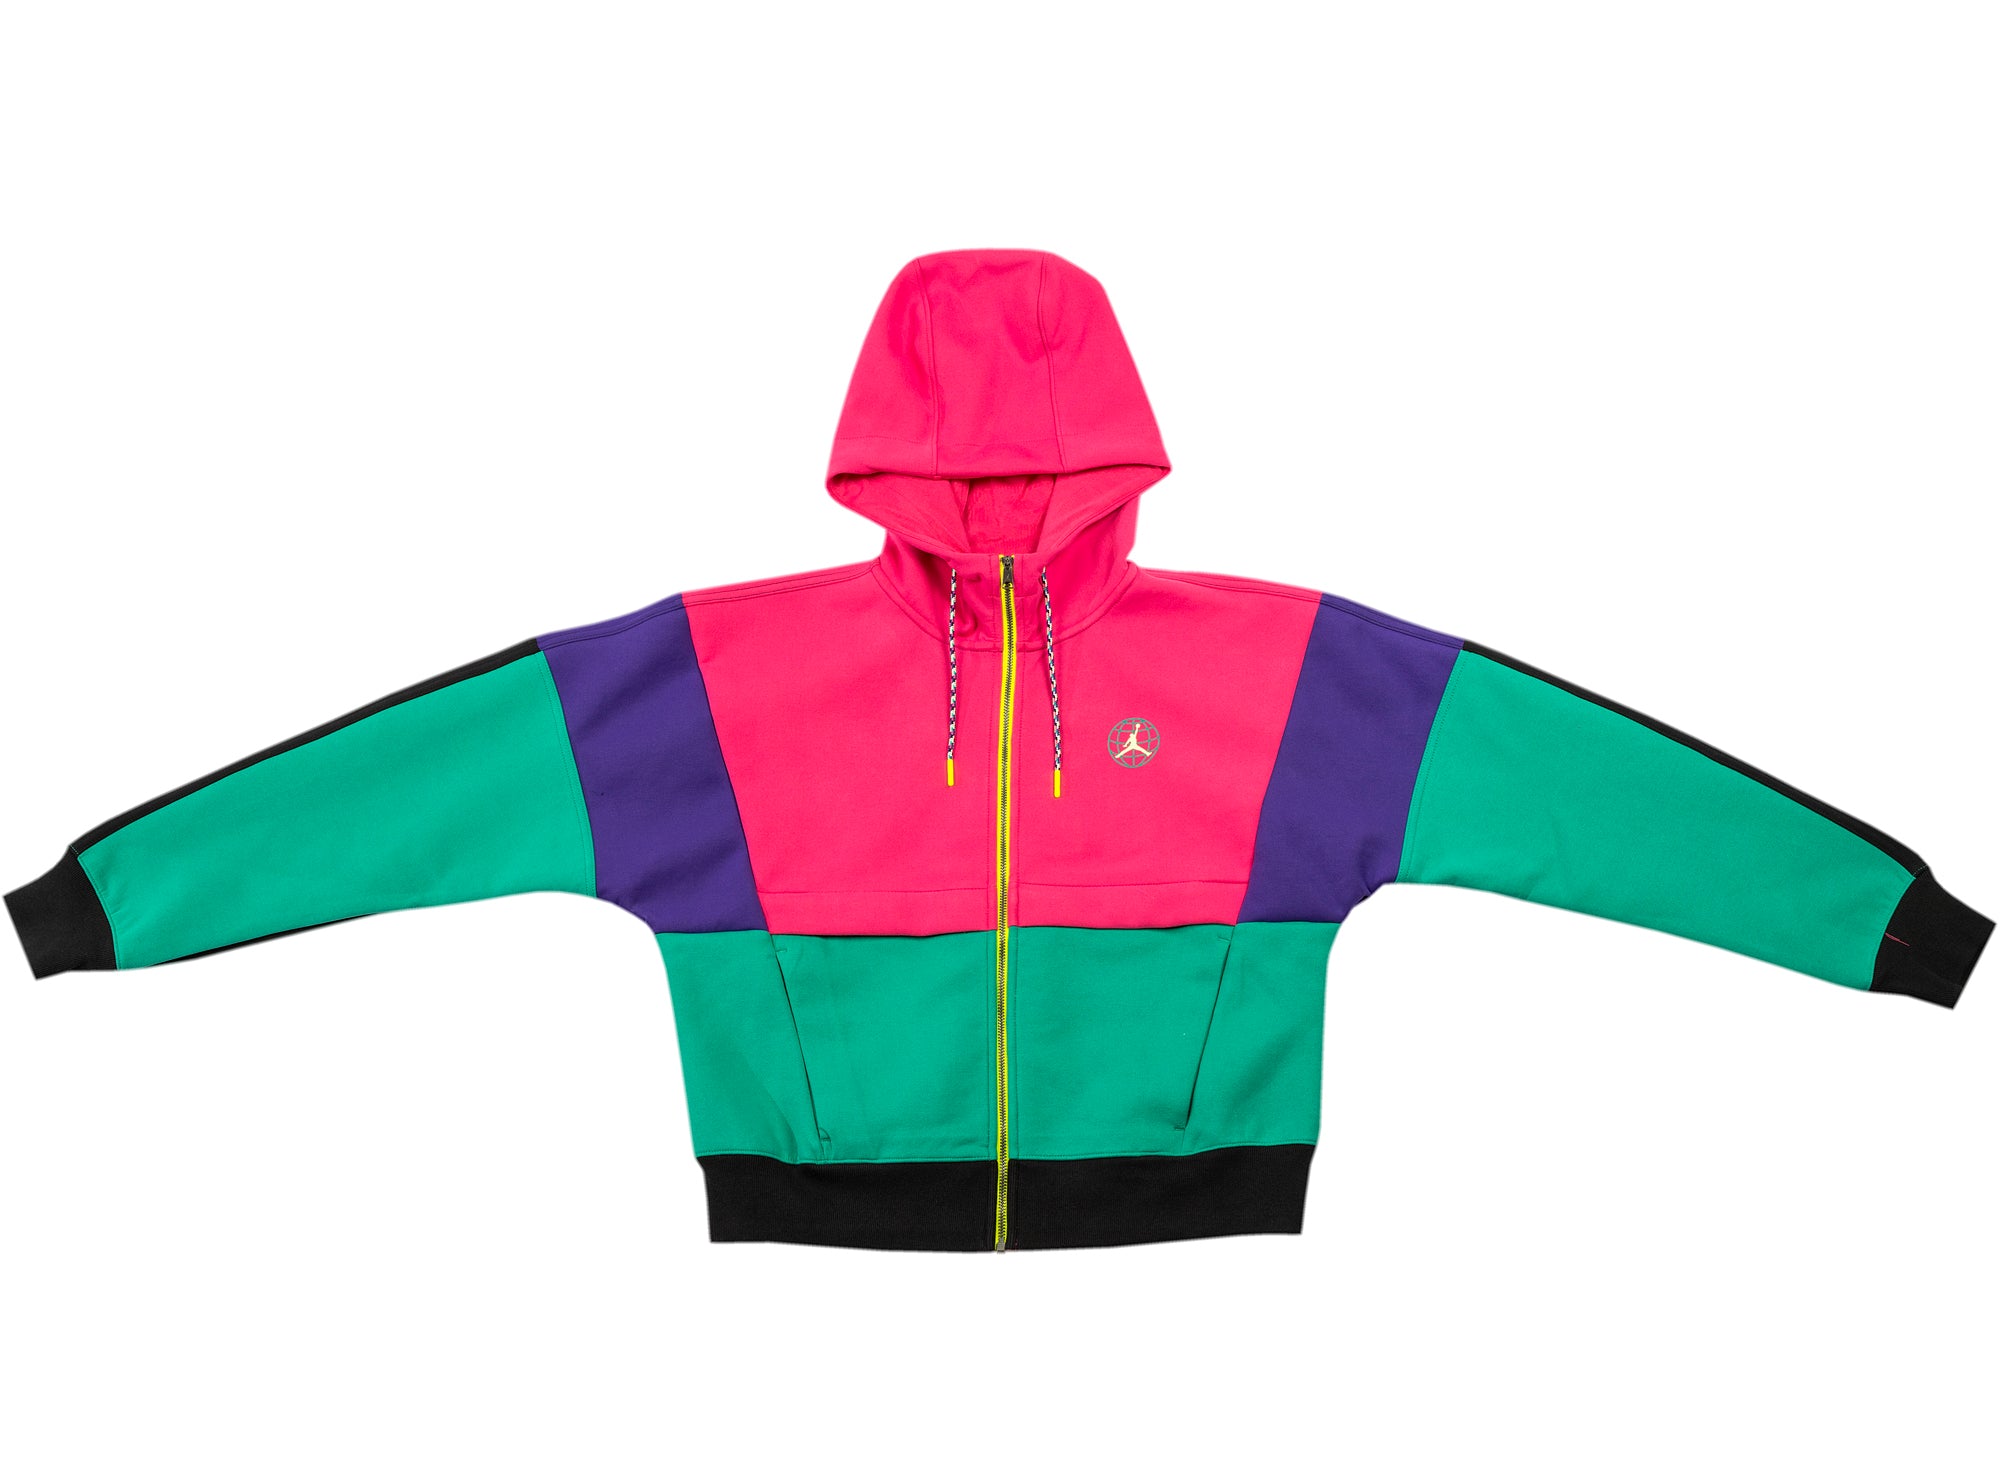 multicolor jordan hoodie